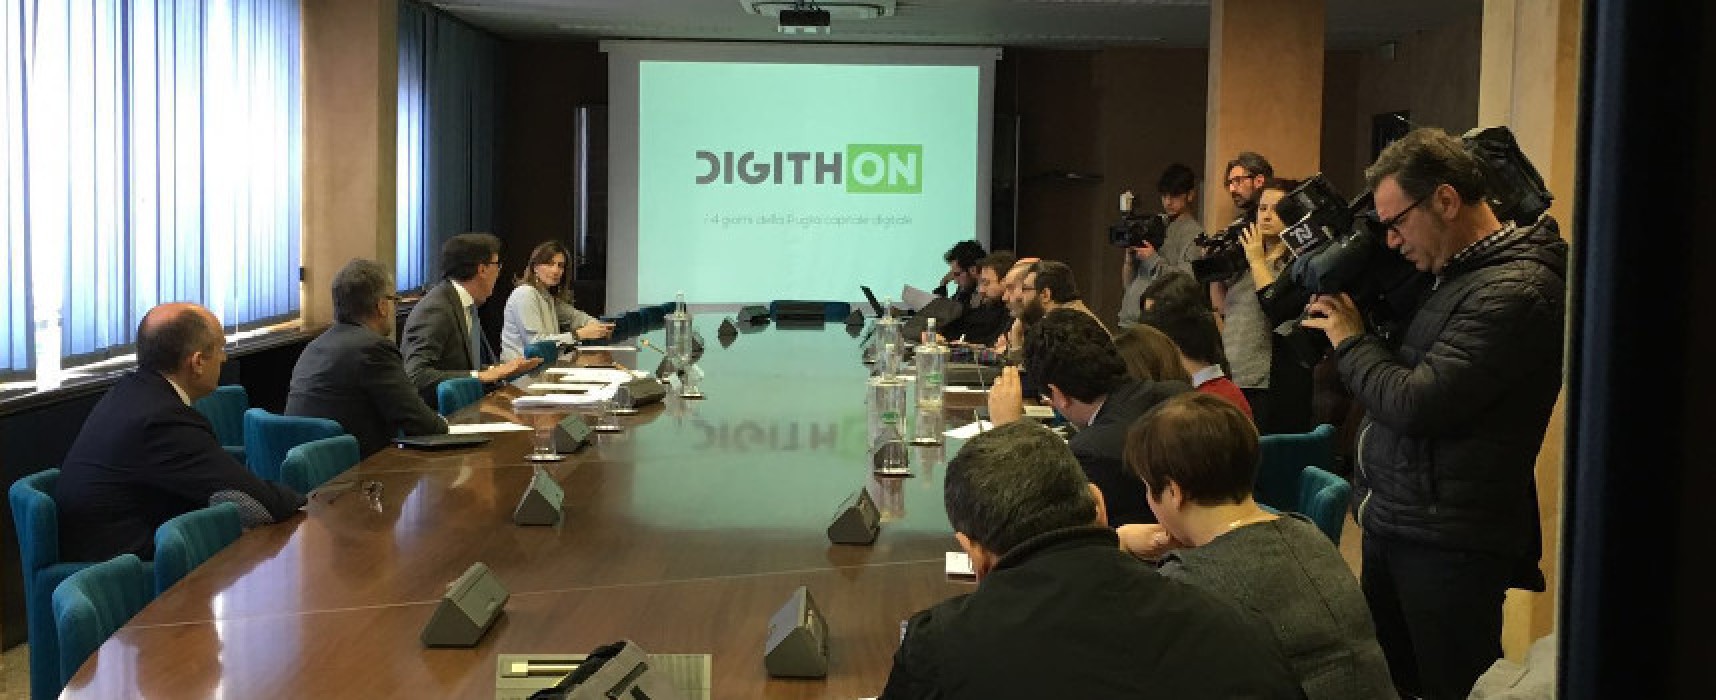 Aperto il bando di Digithon, Bisceglie diventa capitale dell’economia digitale